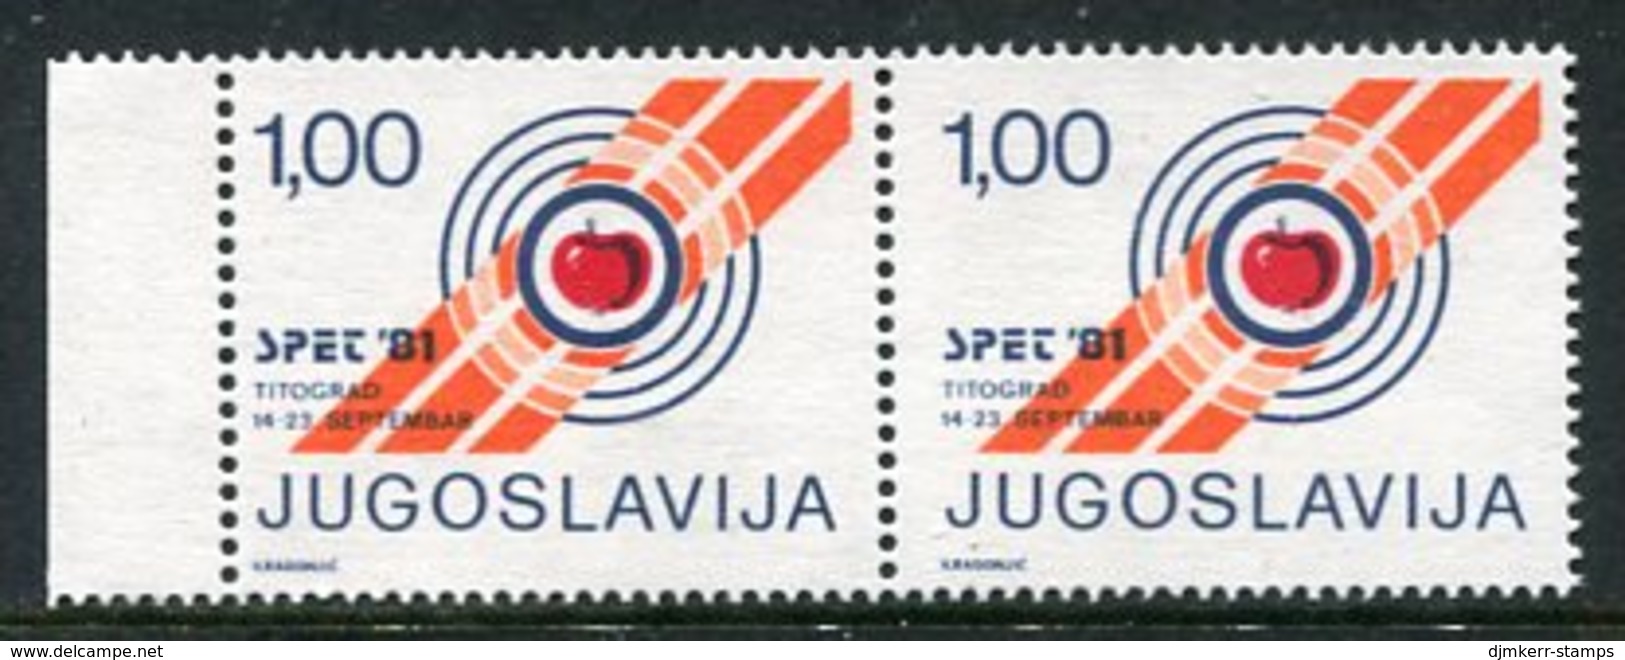 YUGOSLAVIA 1981 SPET '81 European Shooting Championship Tax Stamp, Marginal Pair With Variety MNH / ** - Wohlfahrtsmarken